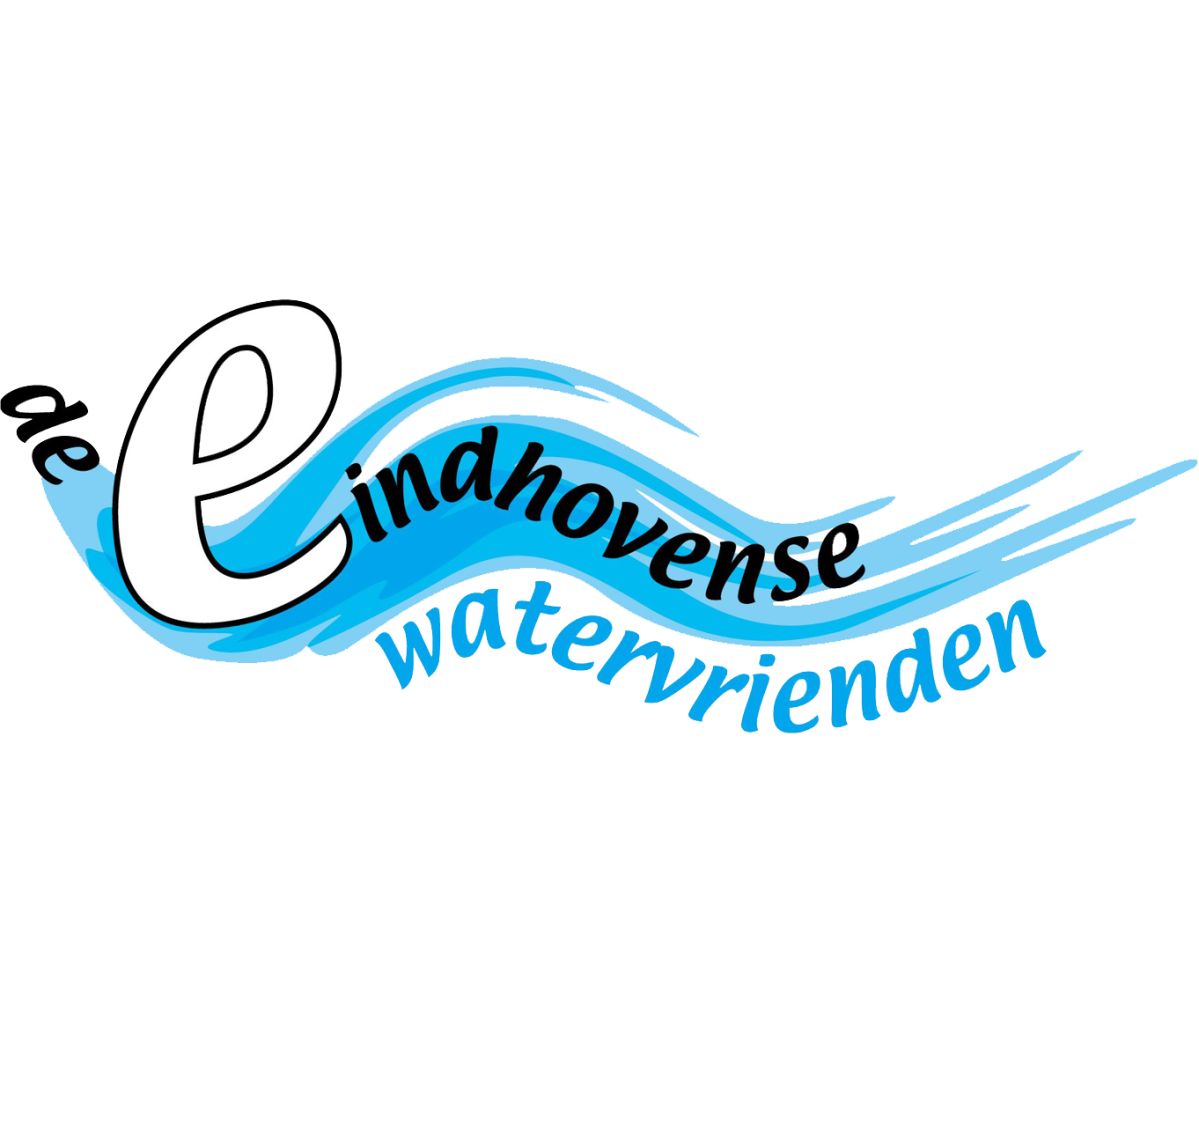 Eindhovense Watervrienden